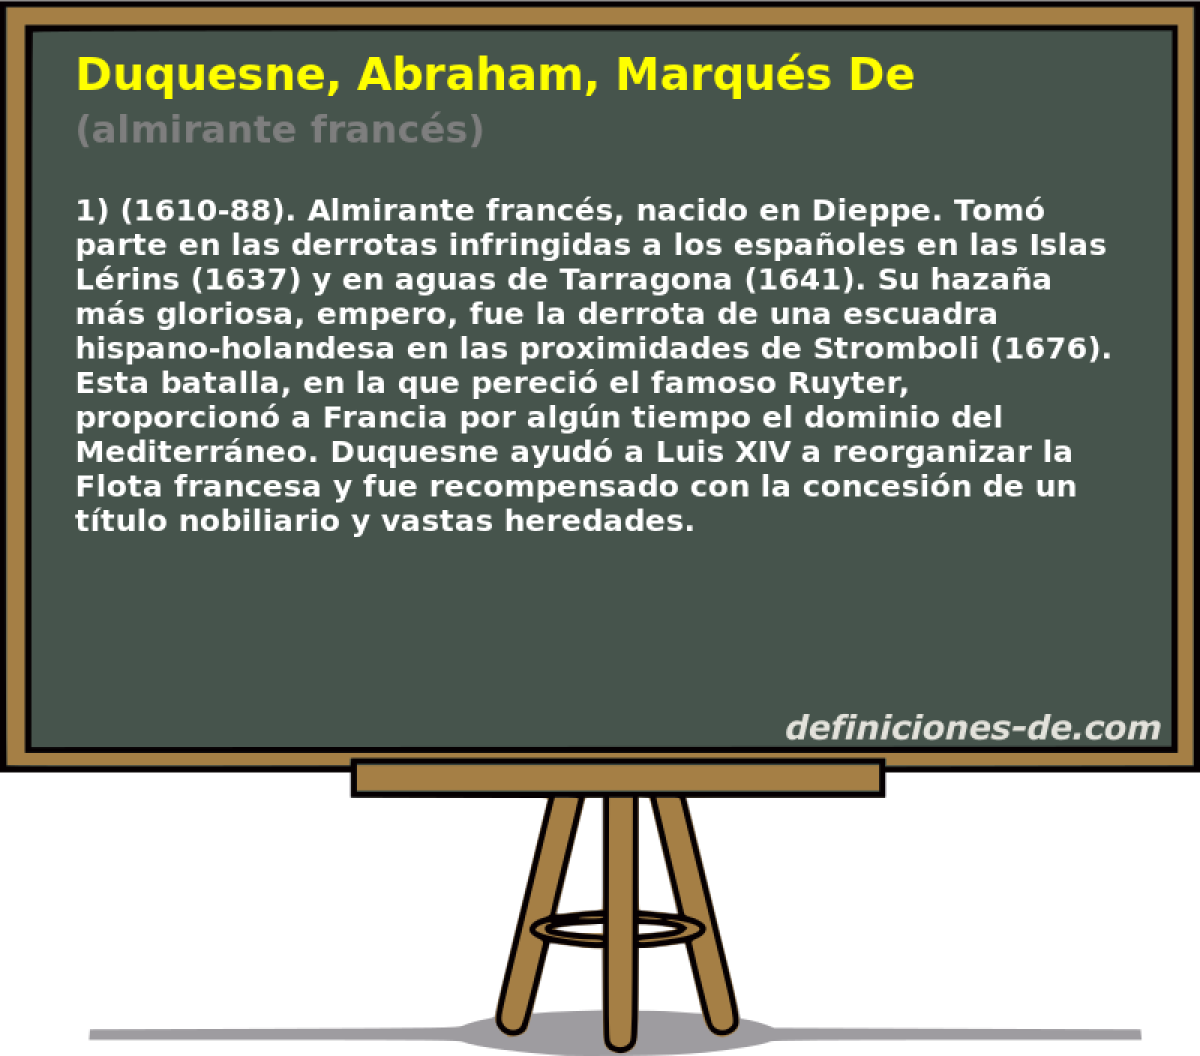 Duquesne, Abraham, Marqus De (almirante francs)